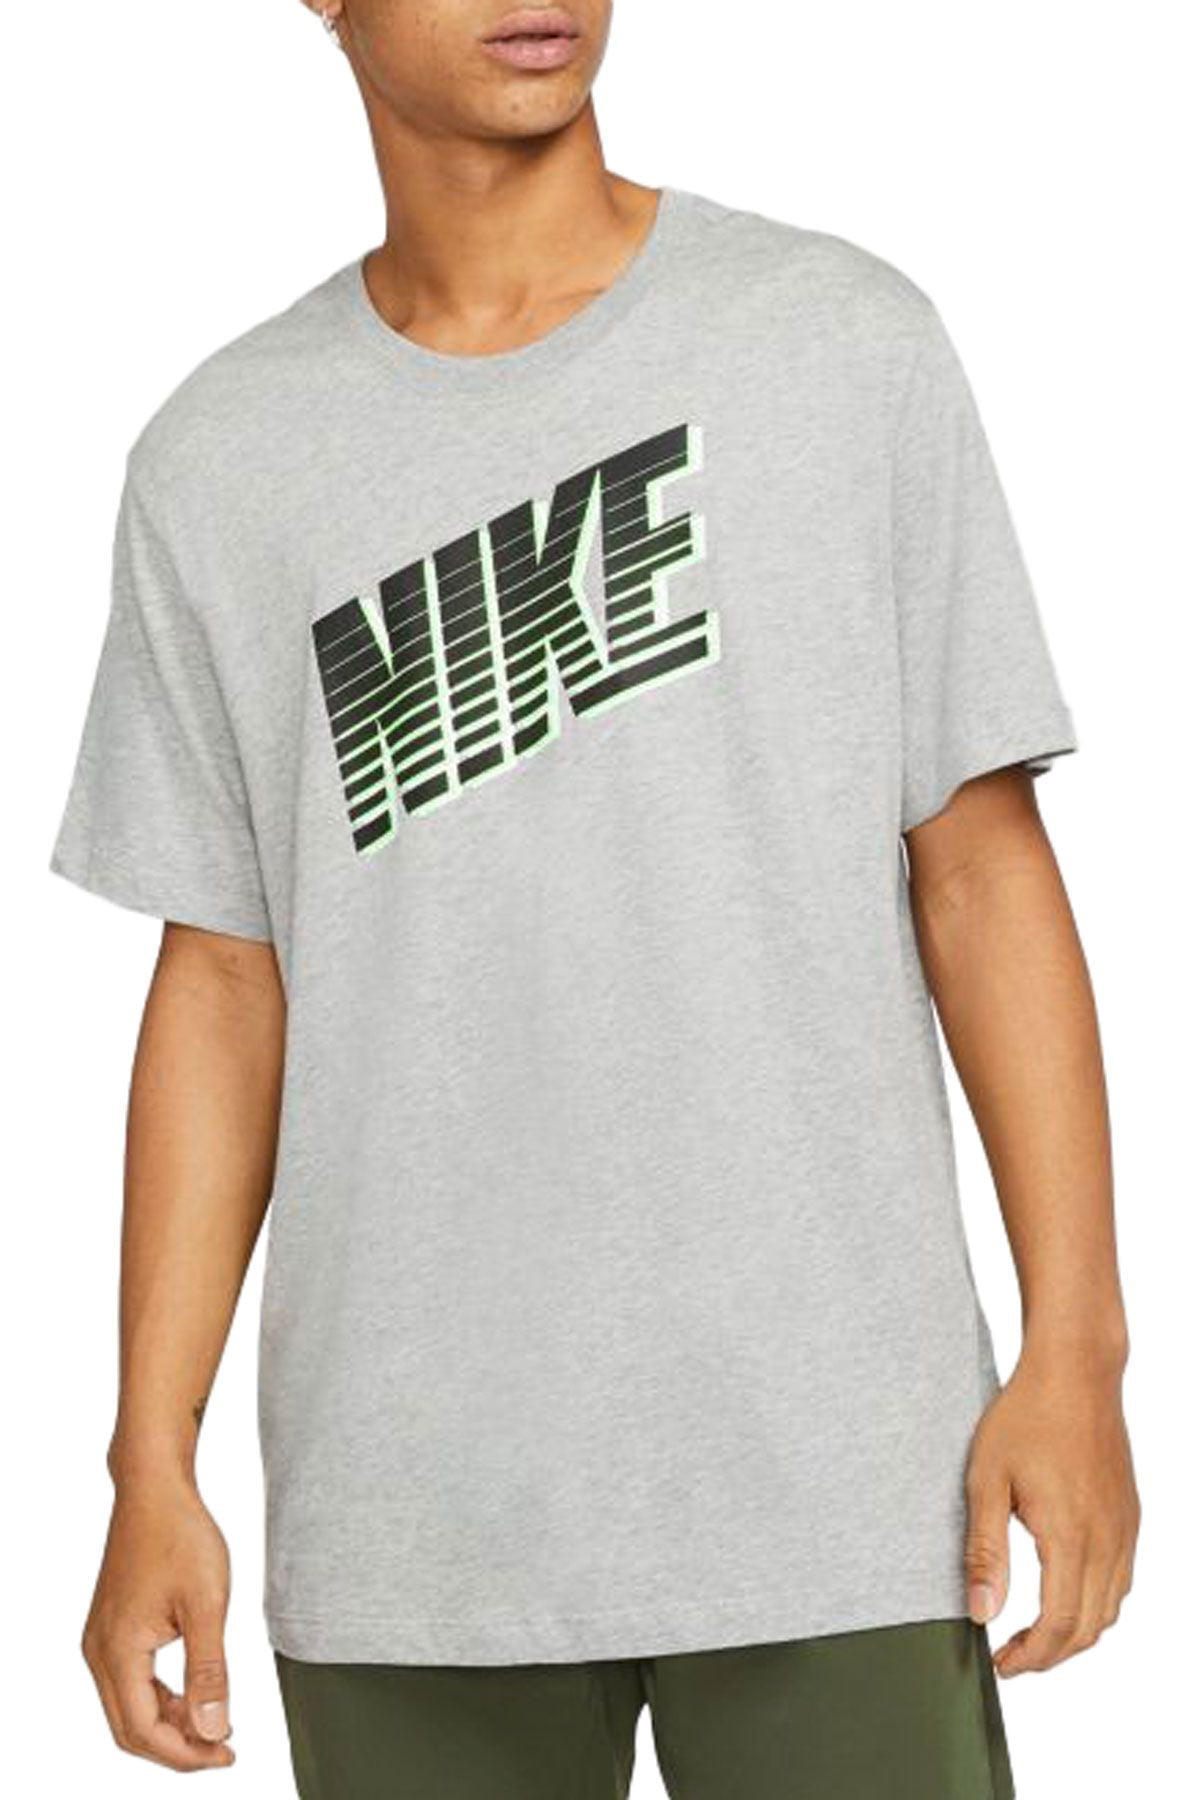 Nike Block Logo Shirt Mens Active Shirts & Tees Size M, Color: Grey ...